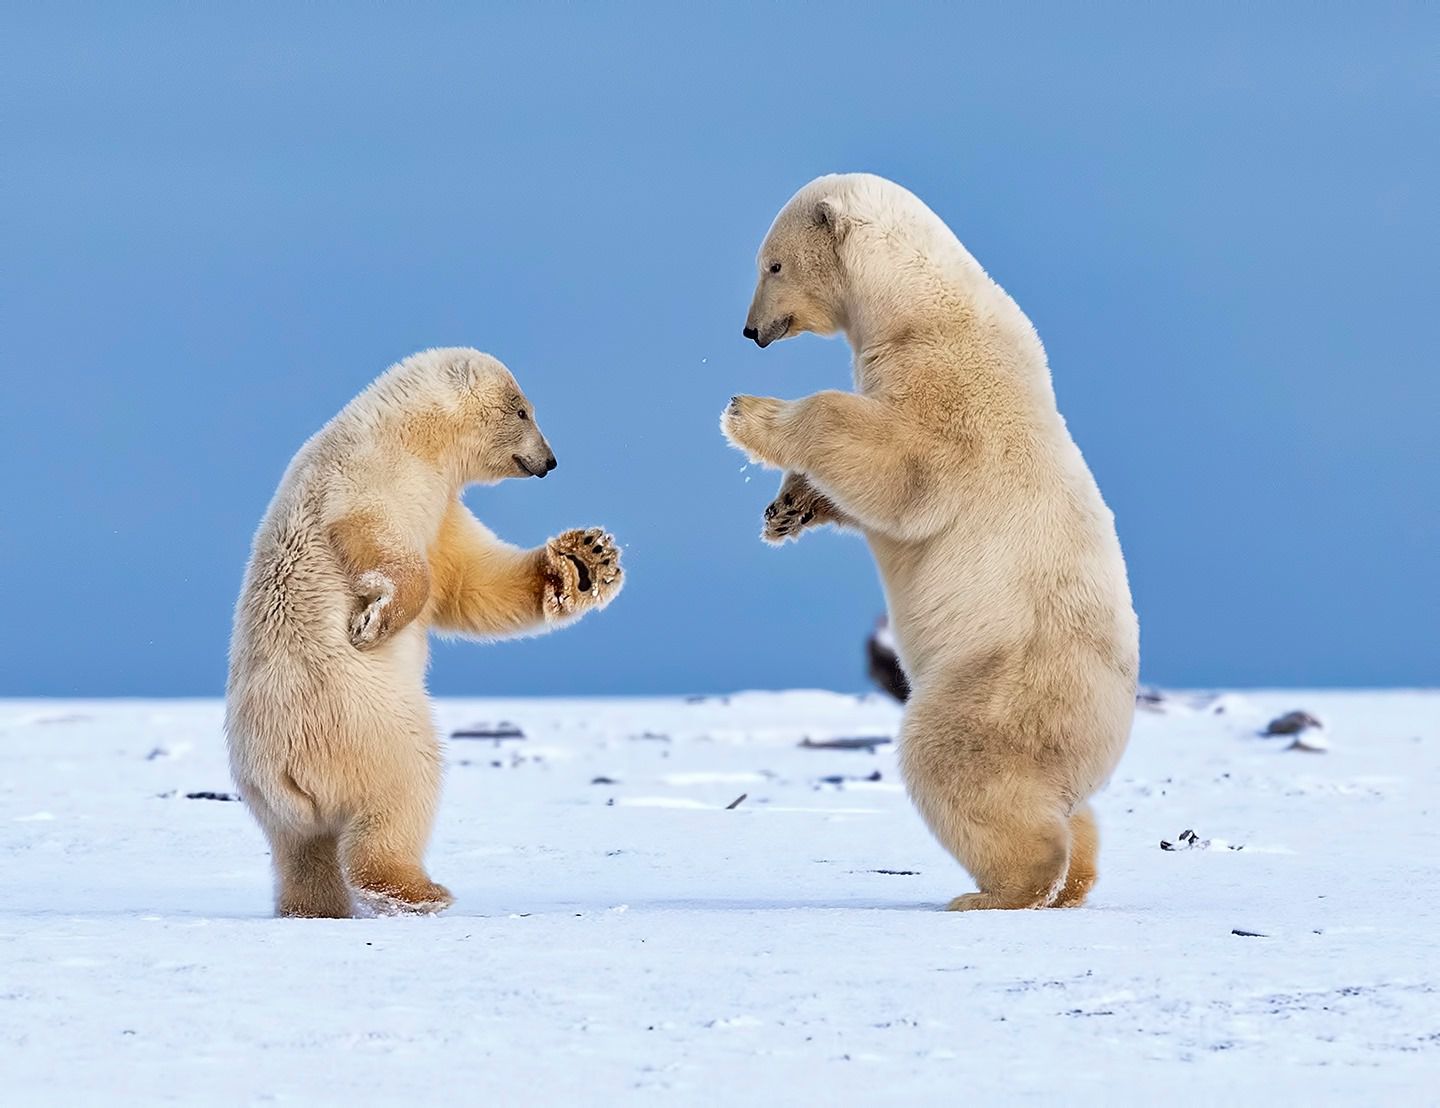 dancing polar bear meme